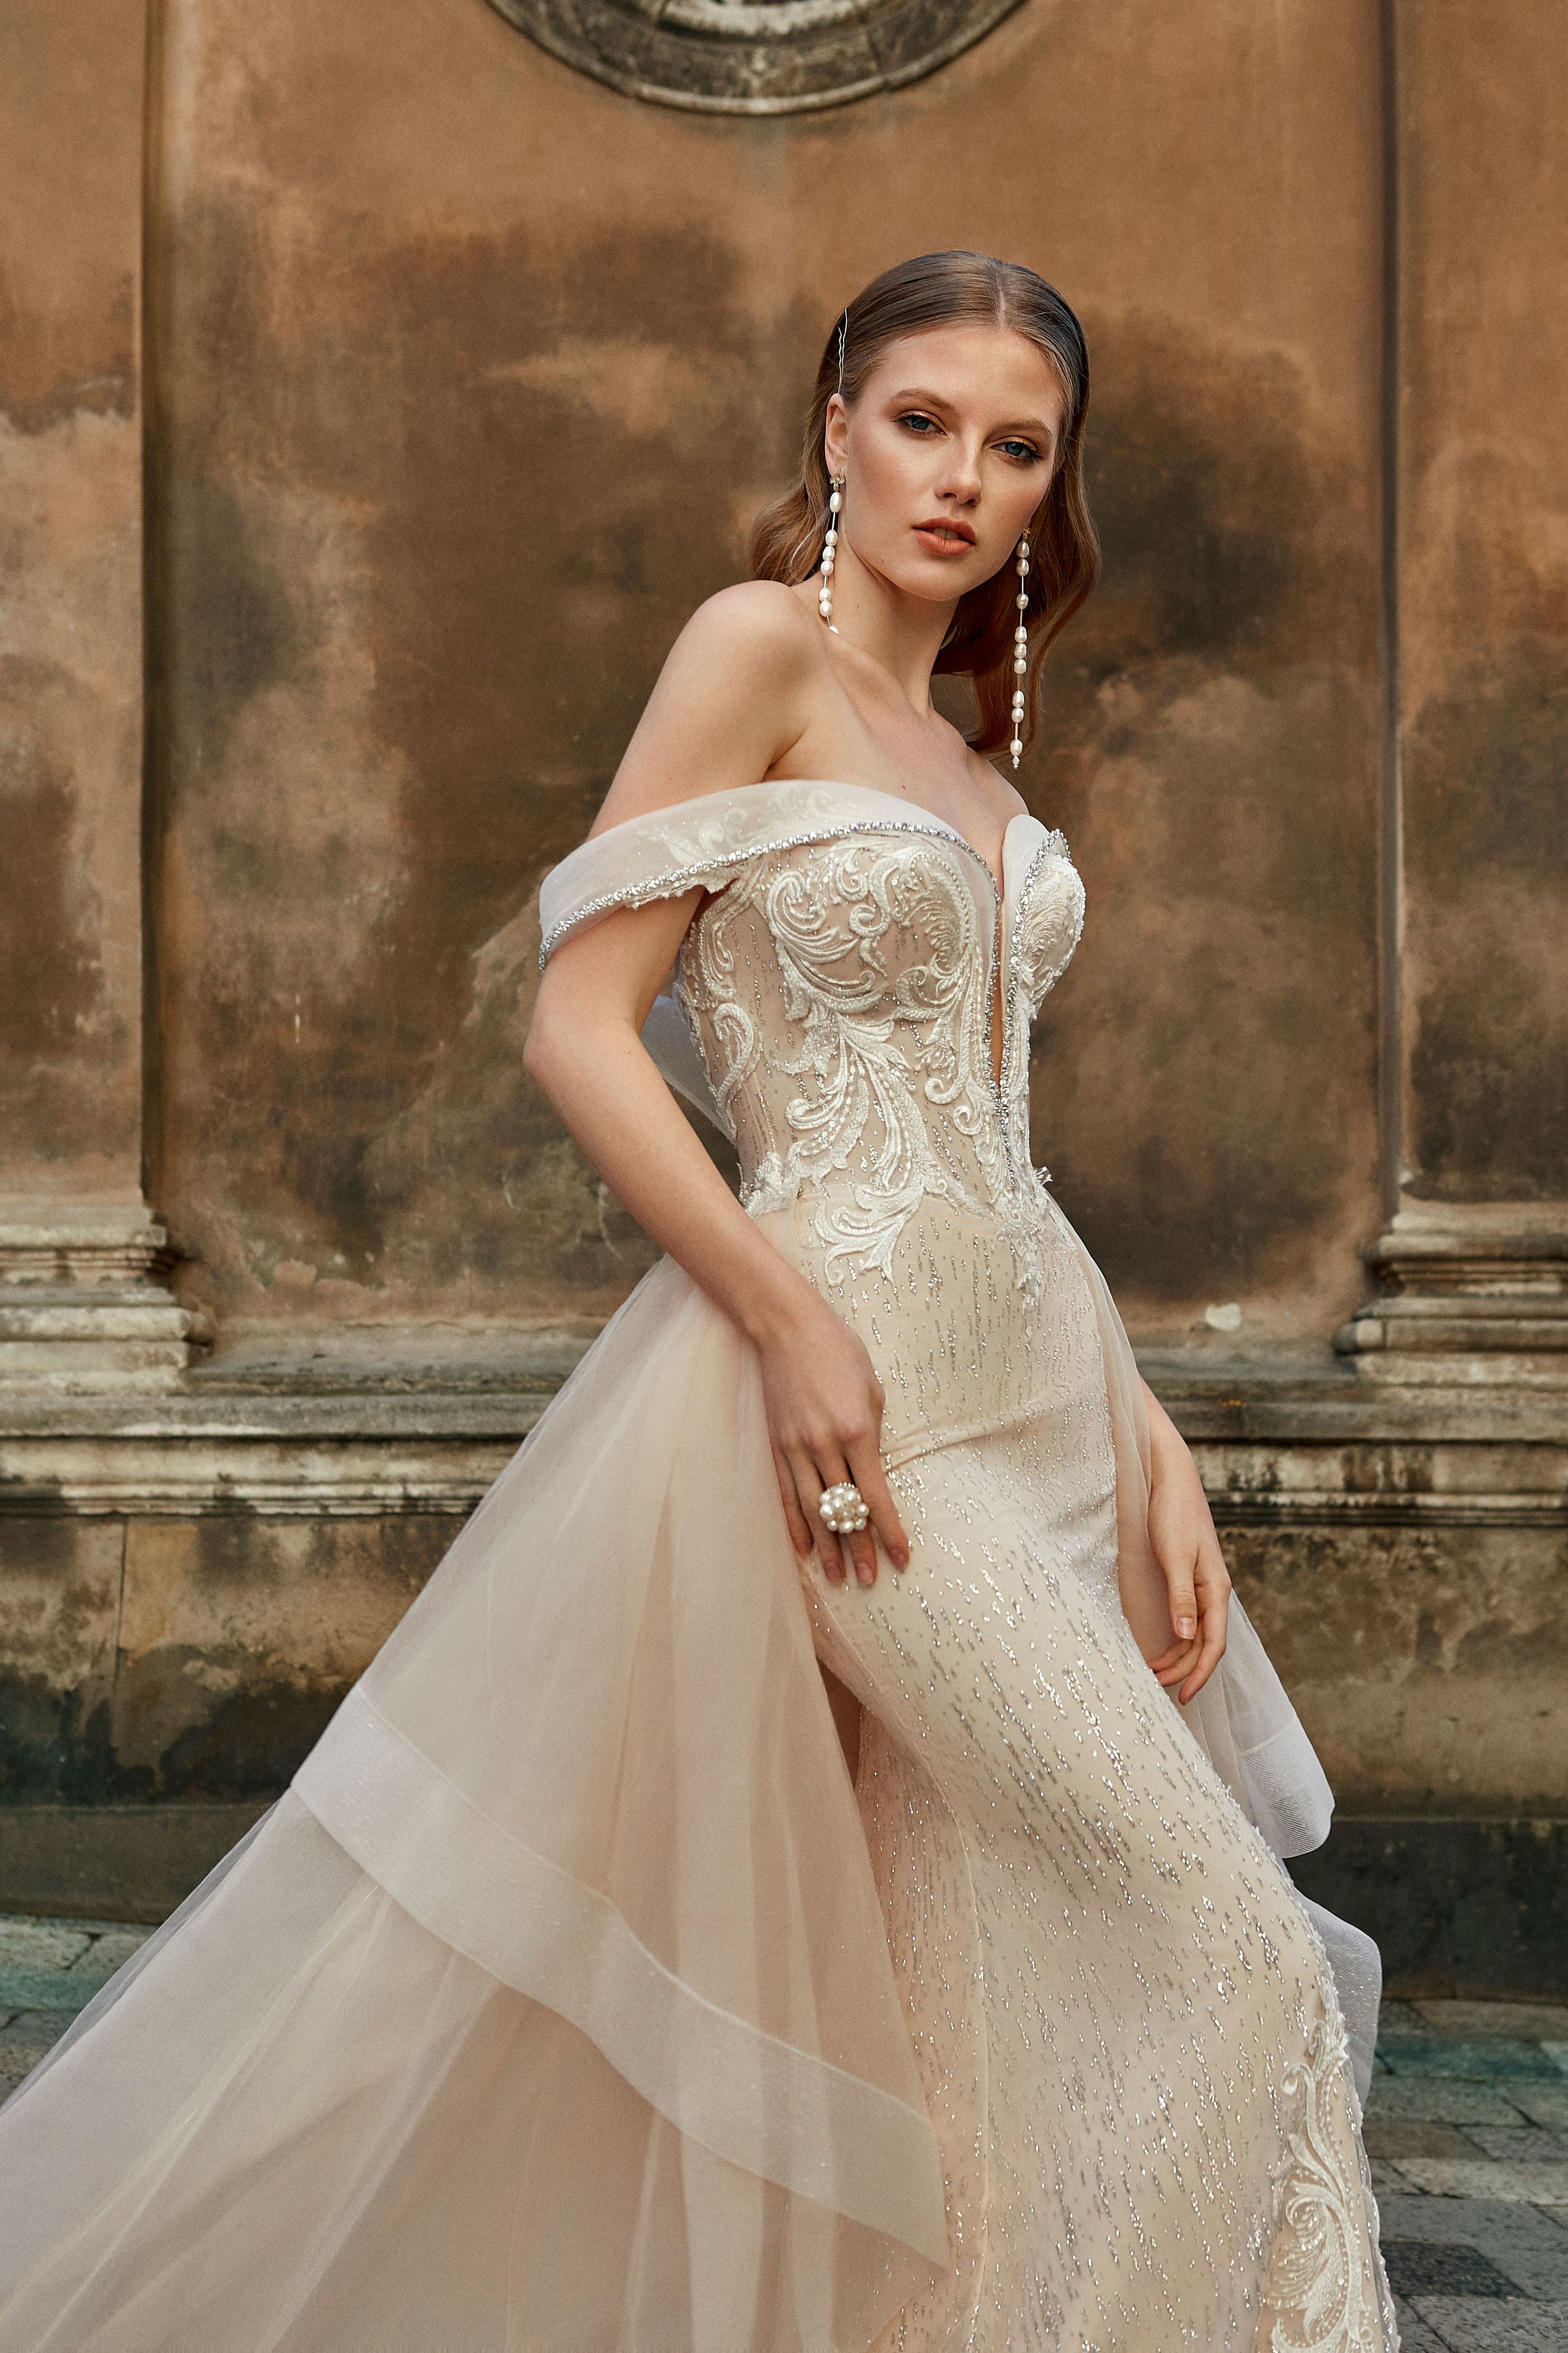 Brigitte - Off the Shoulder Sheath Wedding Dress with Detachable Train - Maxima Bridal